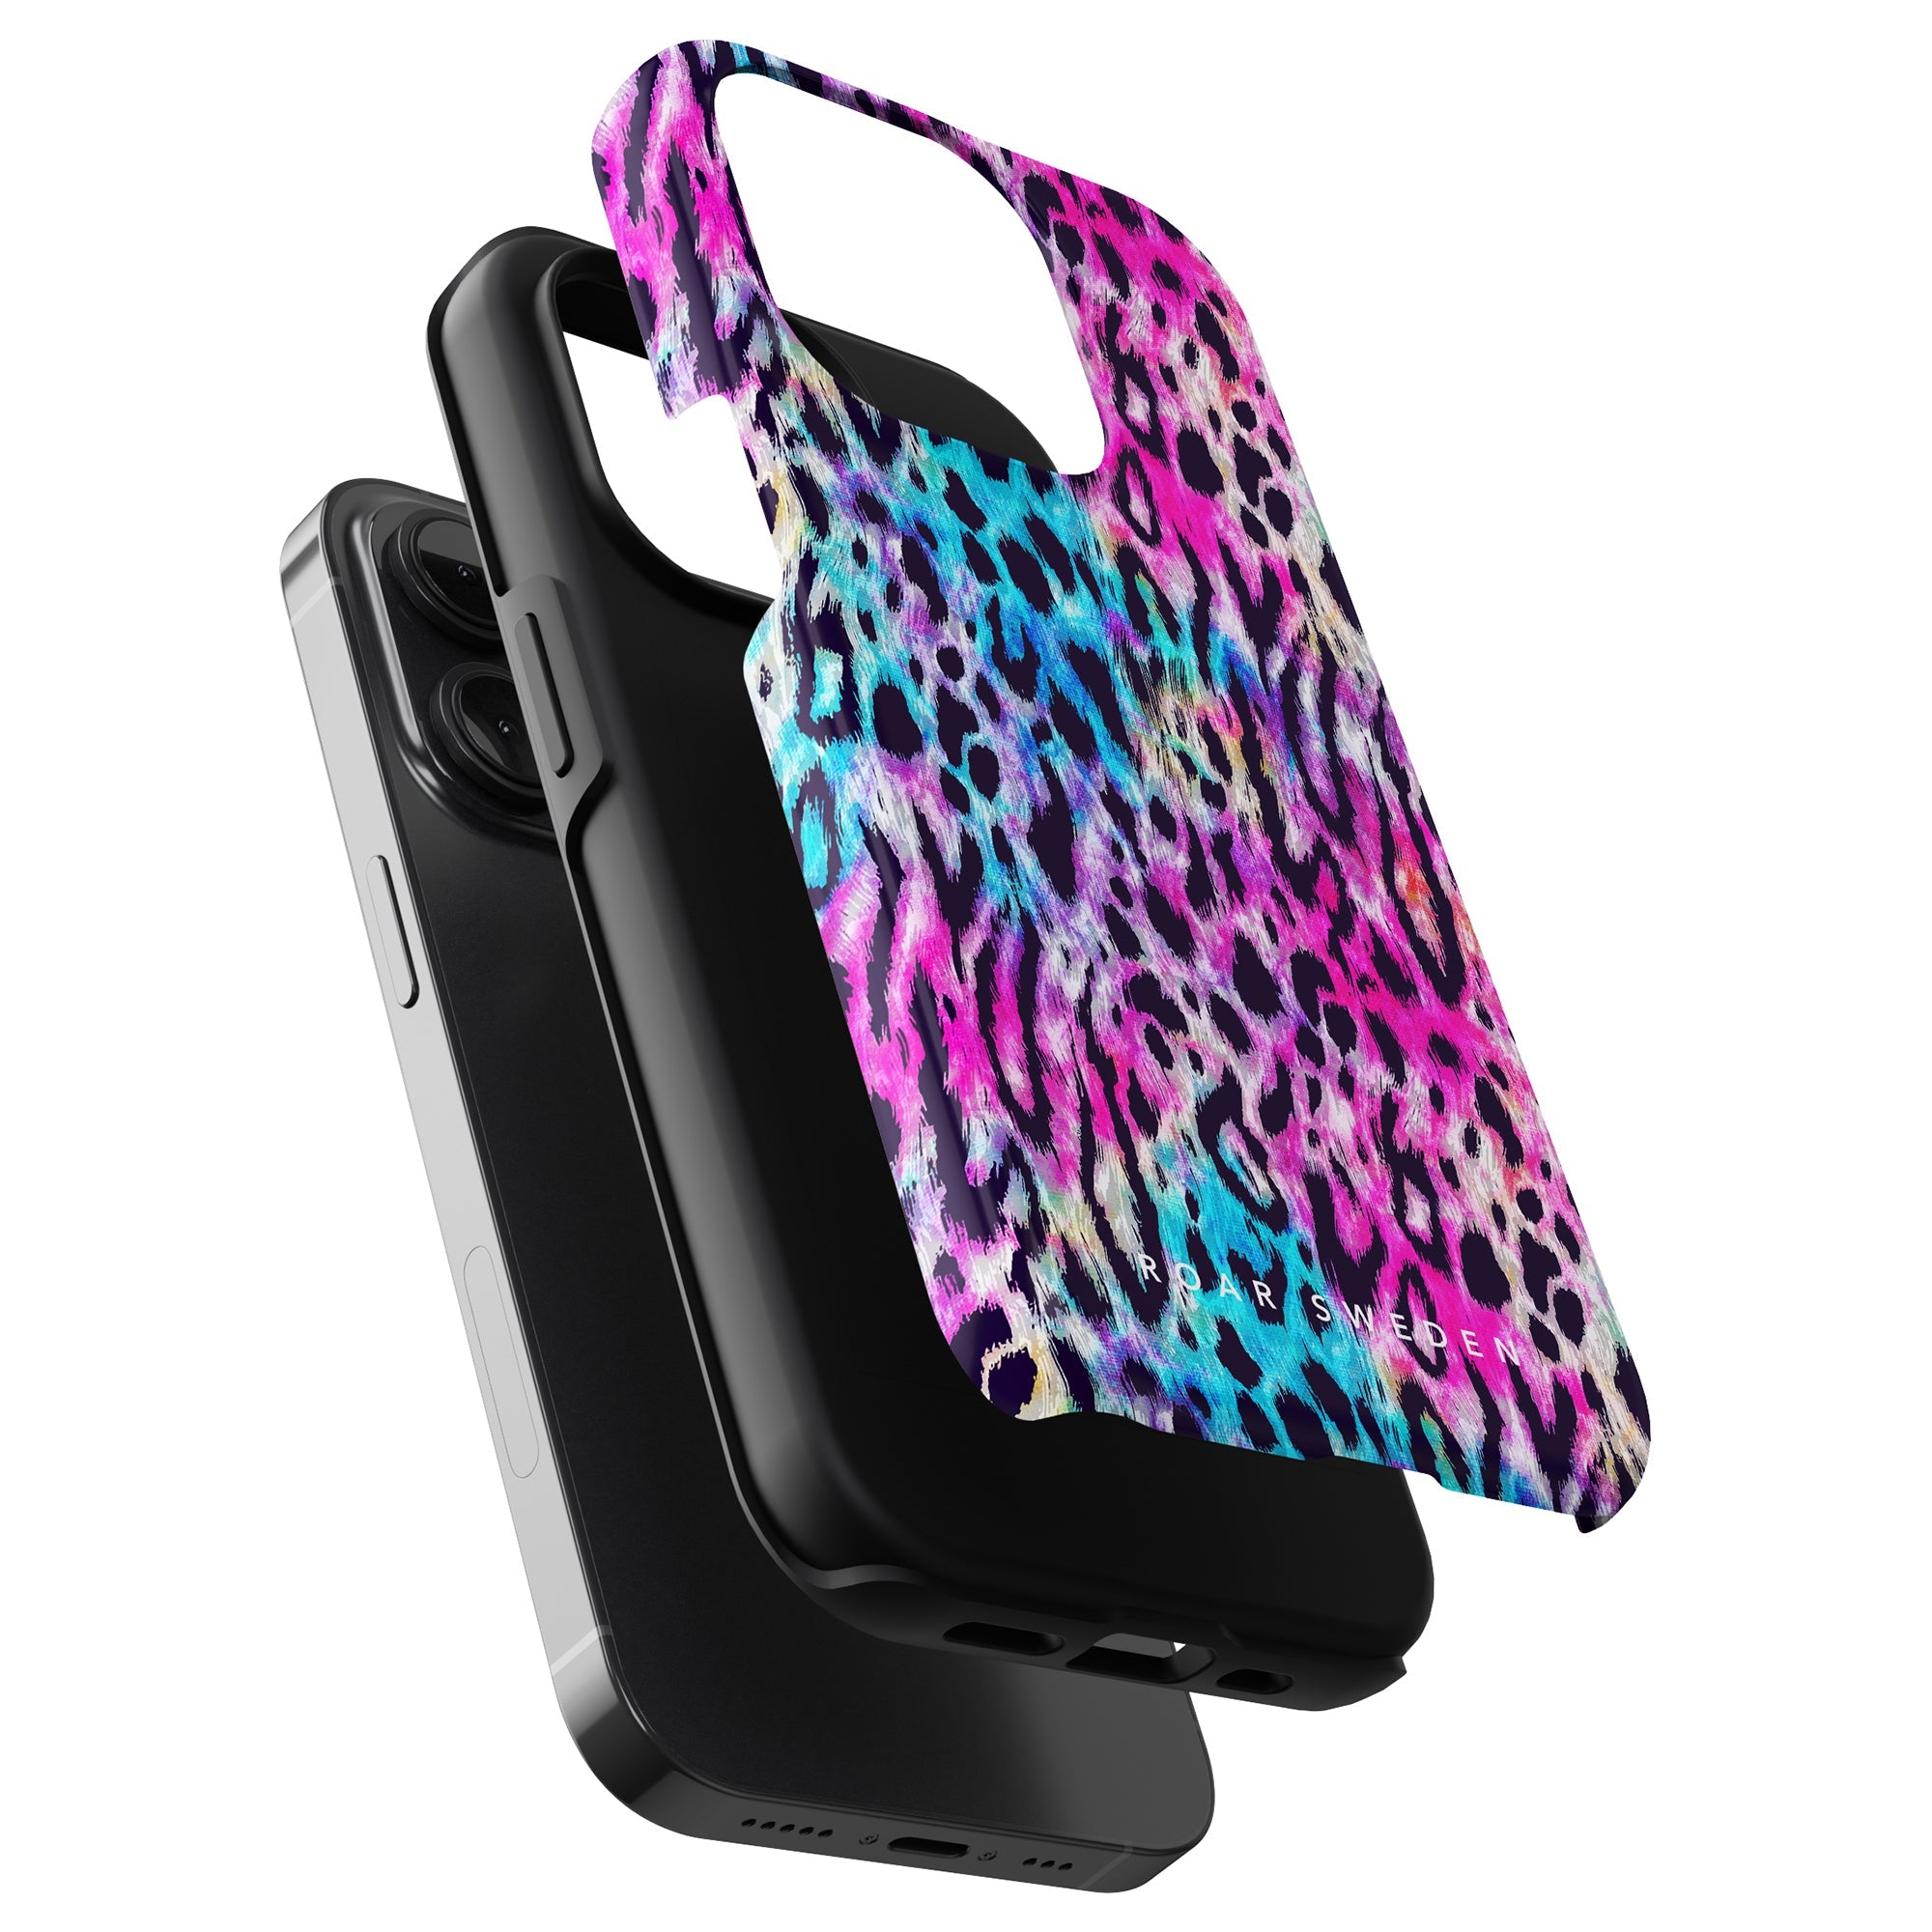 A Vibrant Fur - Tufft fodral med en färgglad leopardmönstrad design för iPhone 11. Denna Skyddande mobilskal från Roar Sweden tillför en touch av vild stil till din telefon samtidigt som